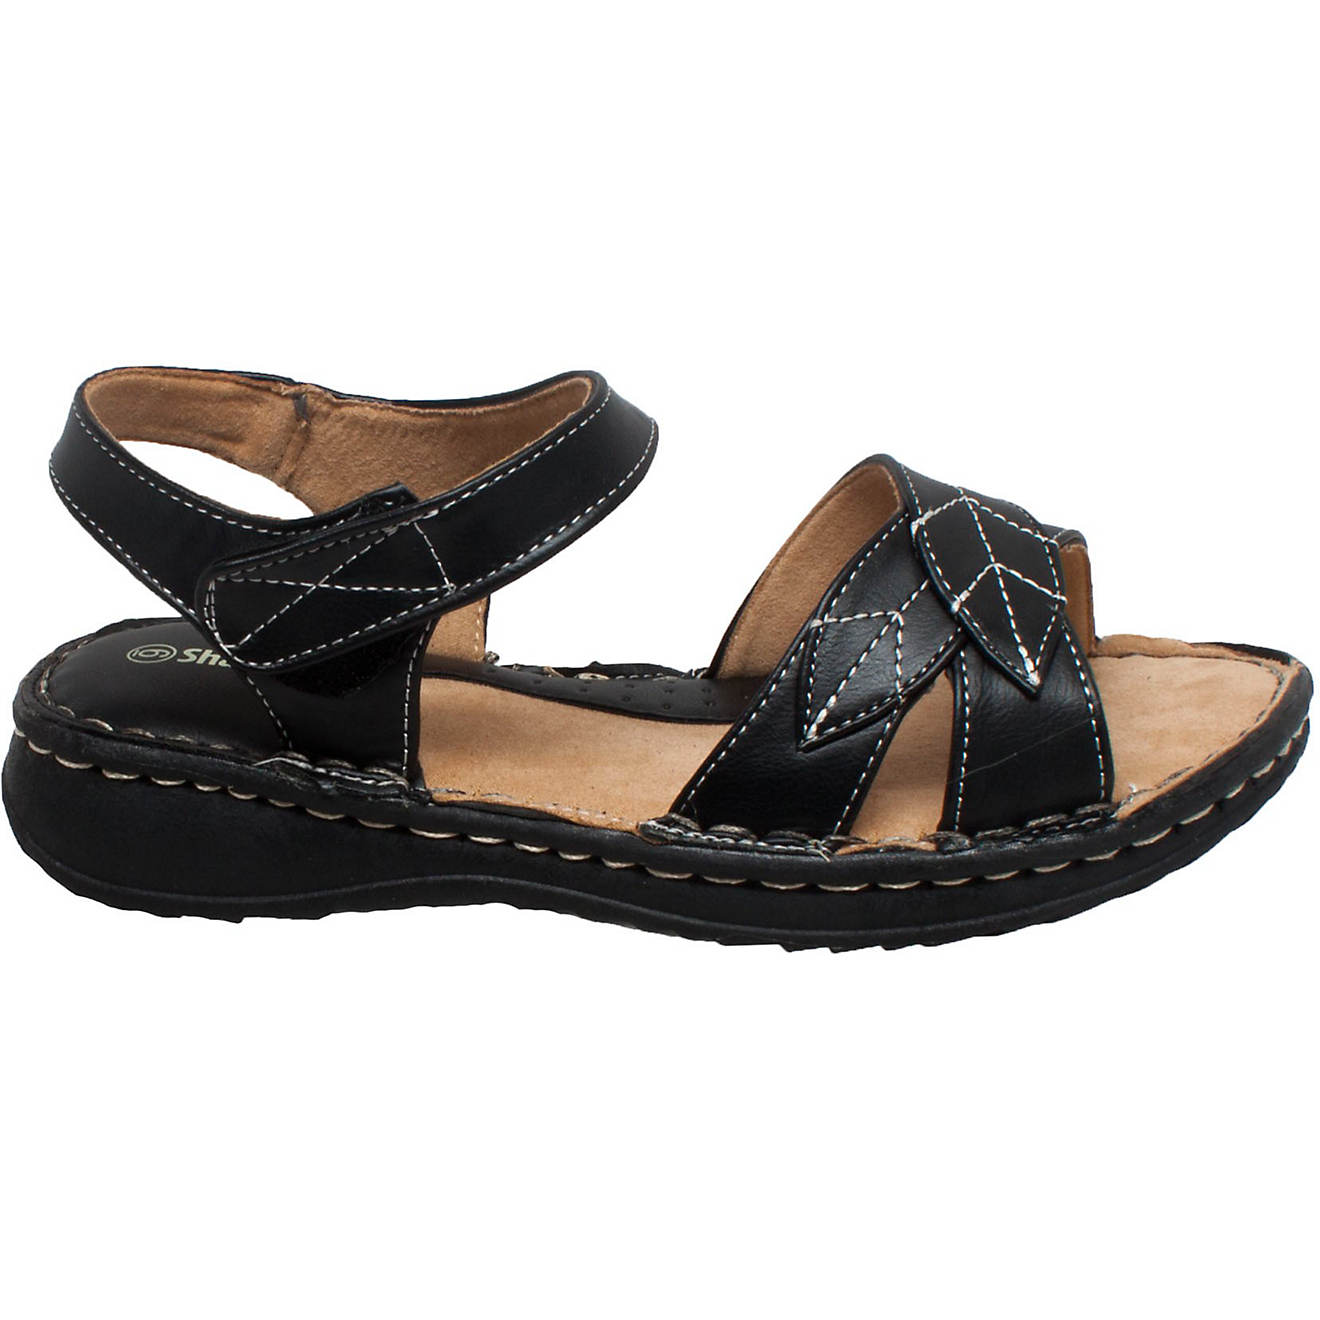 Shaboom Women's Comfort Sandals                                                                                                  - view number 1